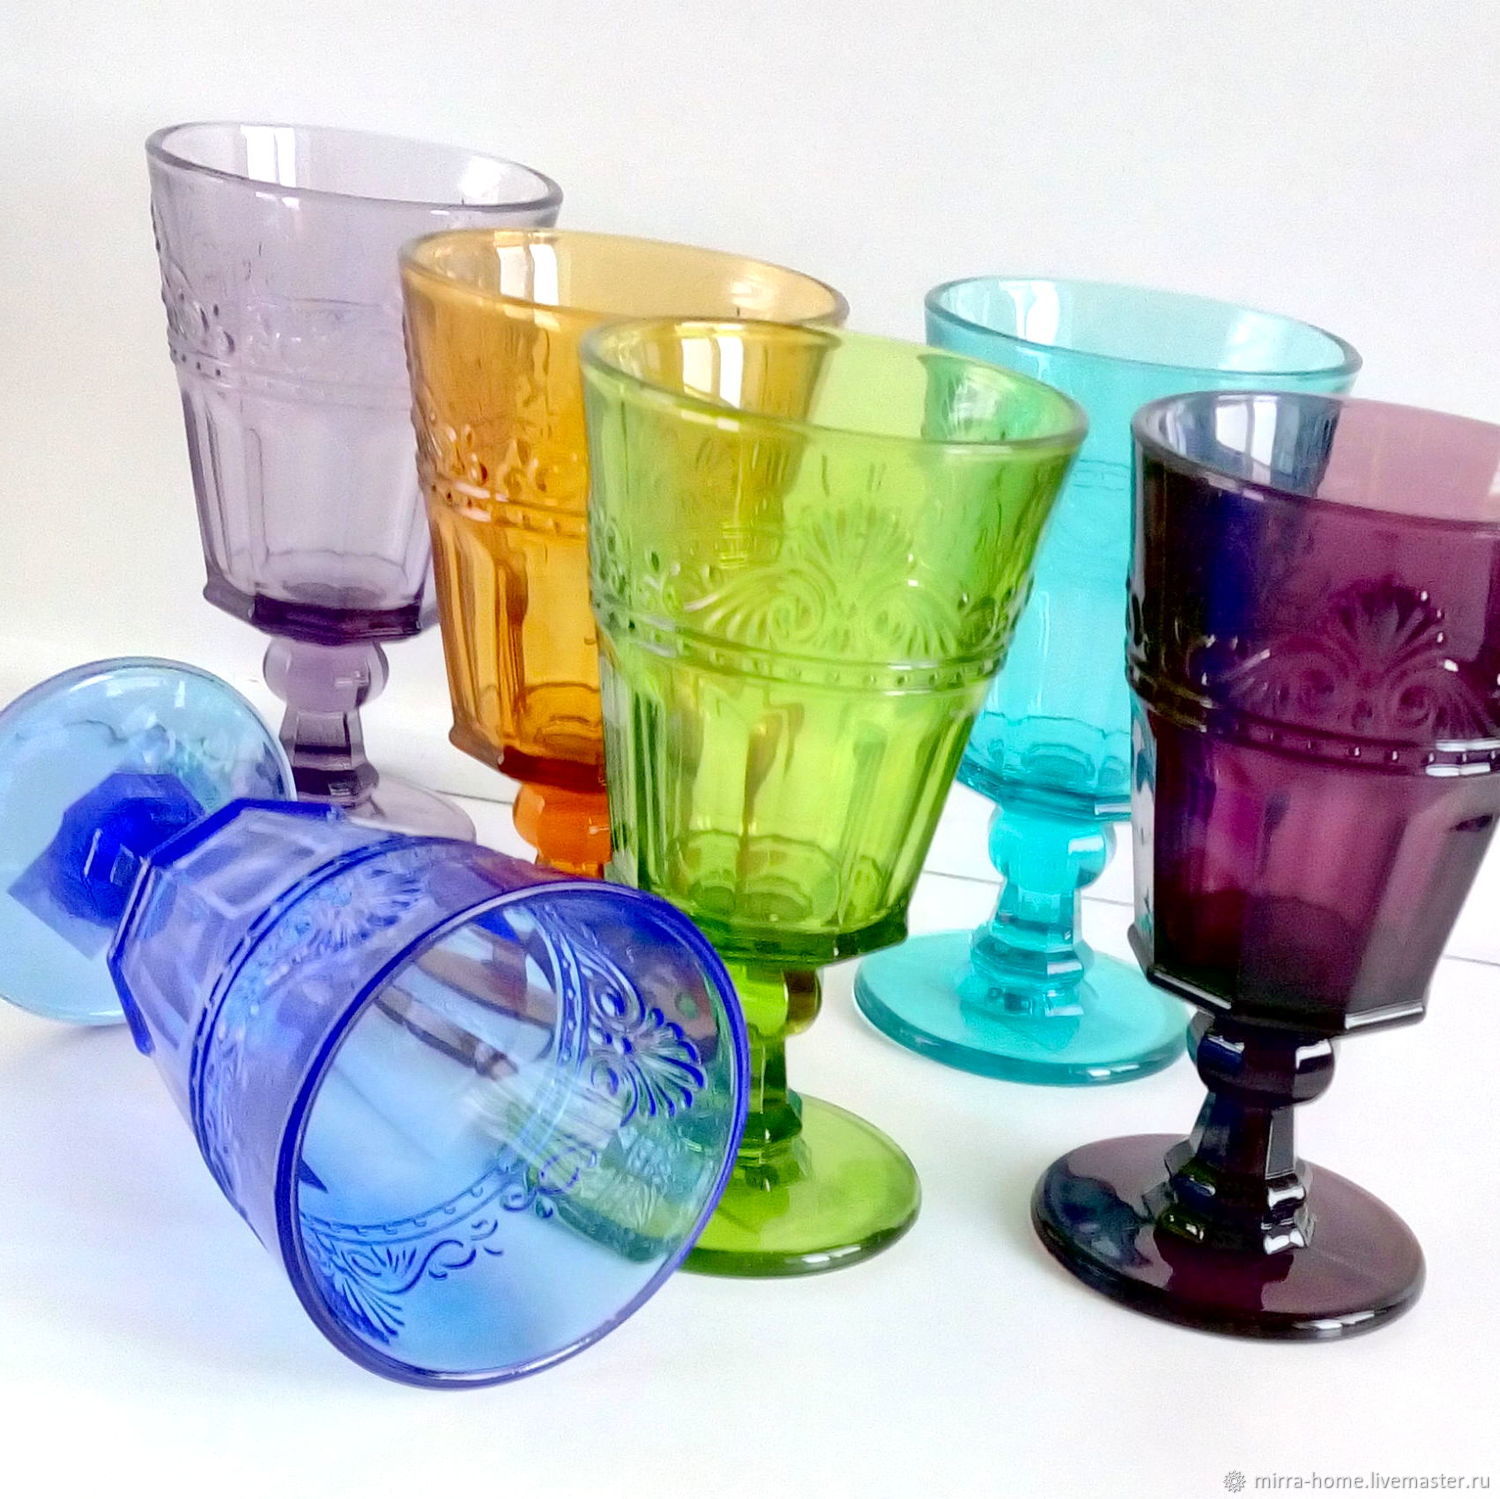 Купить посуду стекло недорого. Стаканы из цветного стекла. Бокалы стеклянные цветные. Разноцветные стеклянные стаканы. Посуда из цветного стекла.